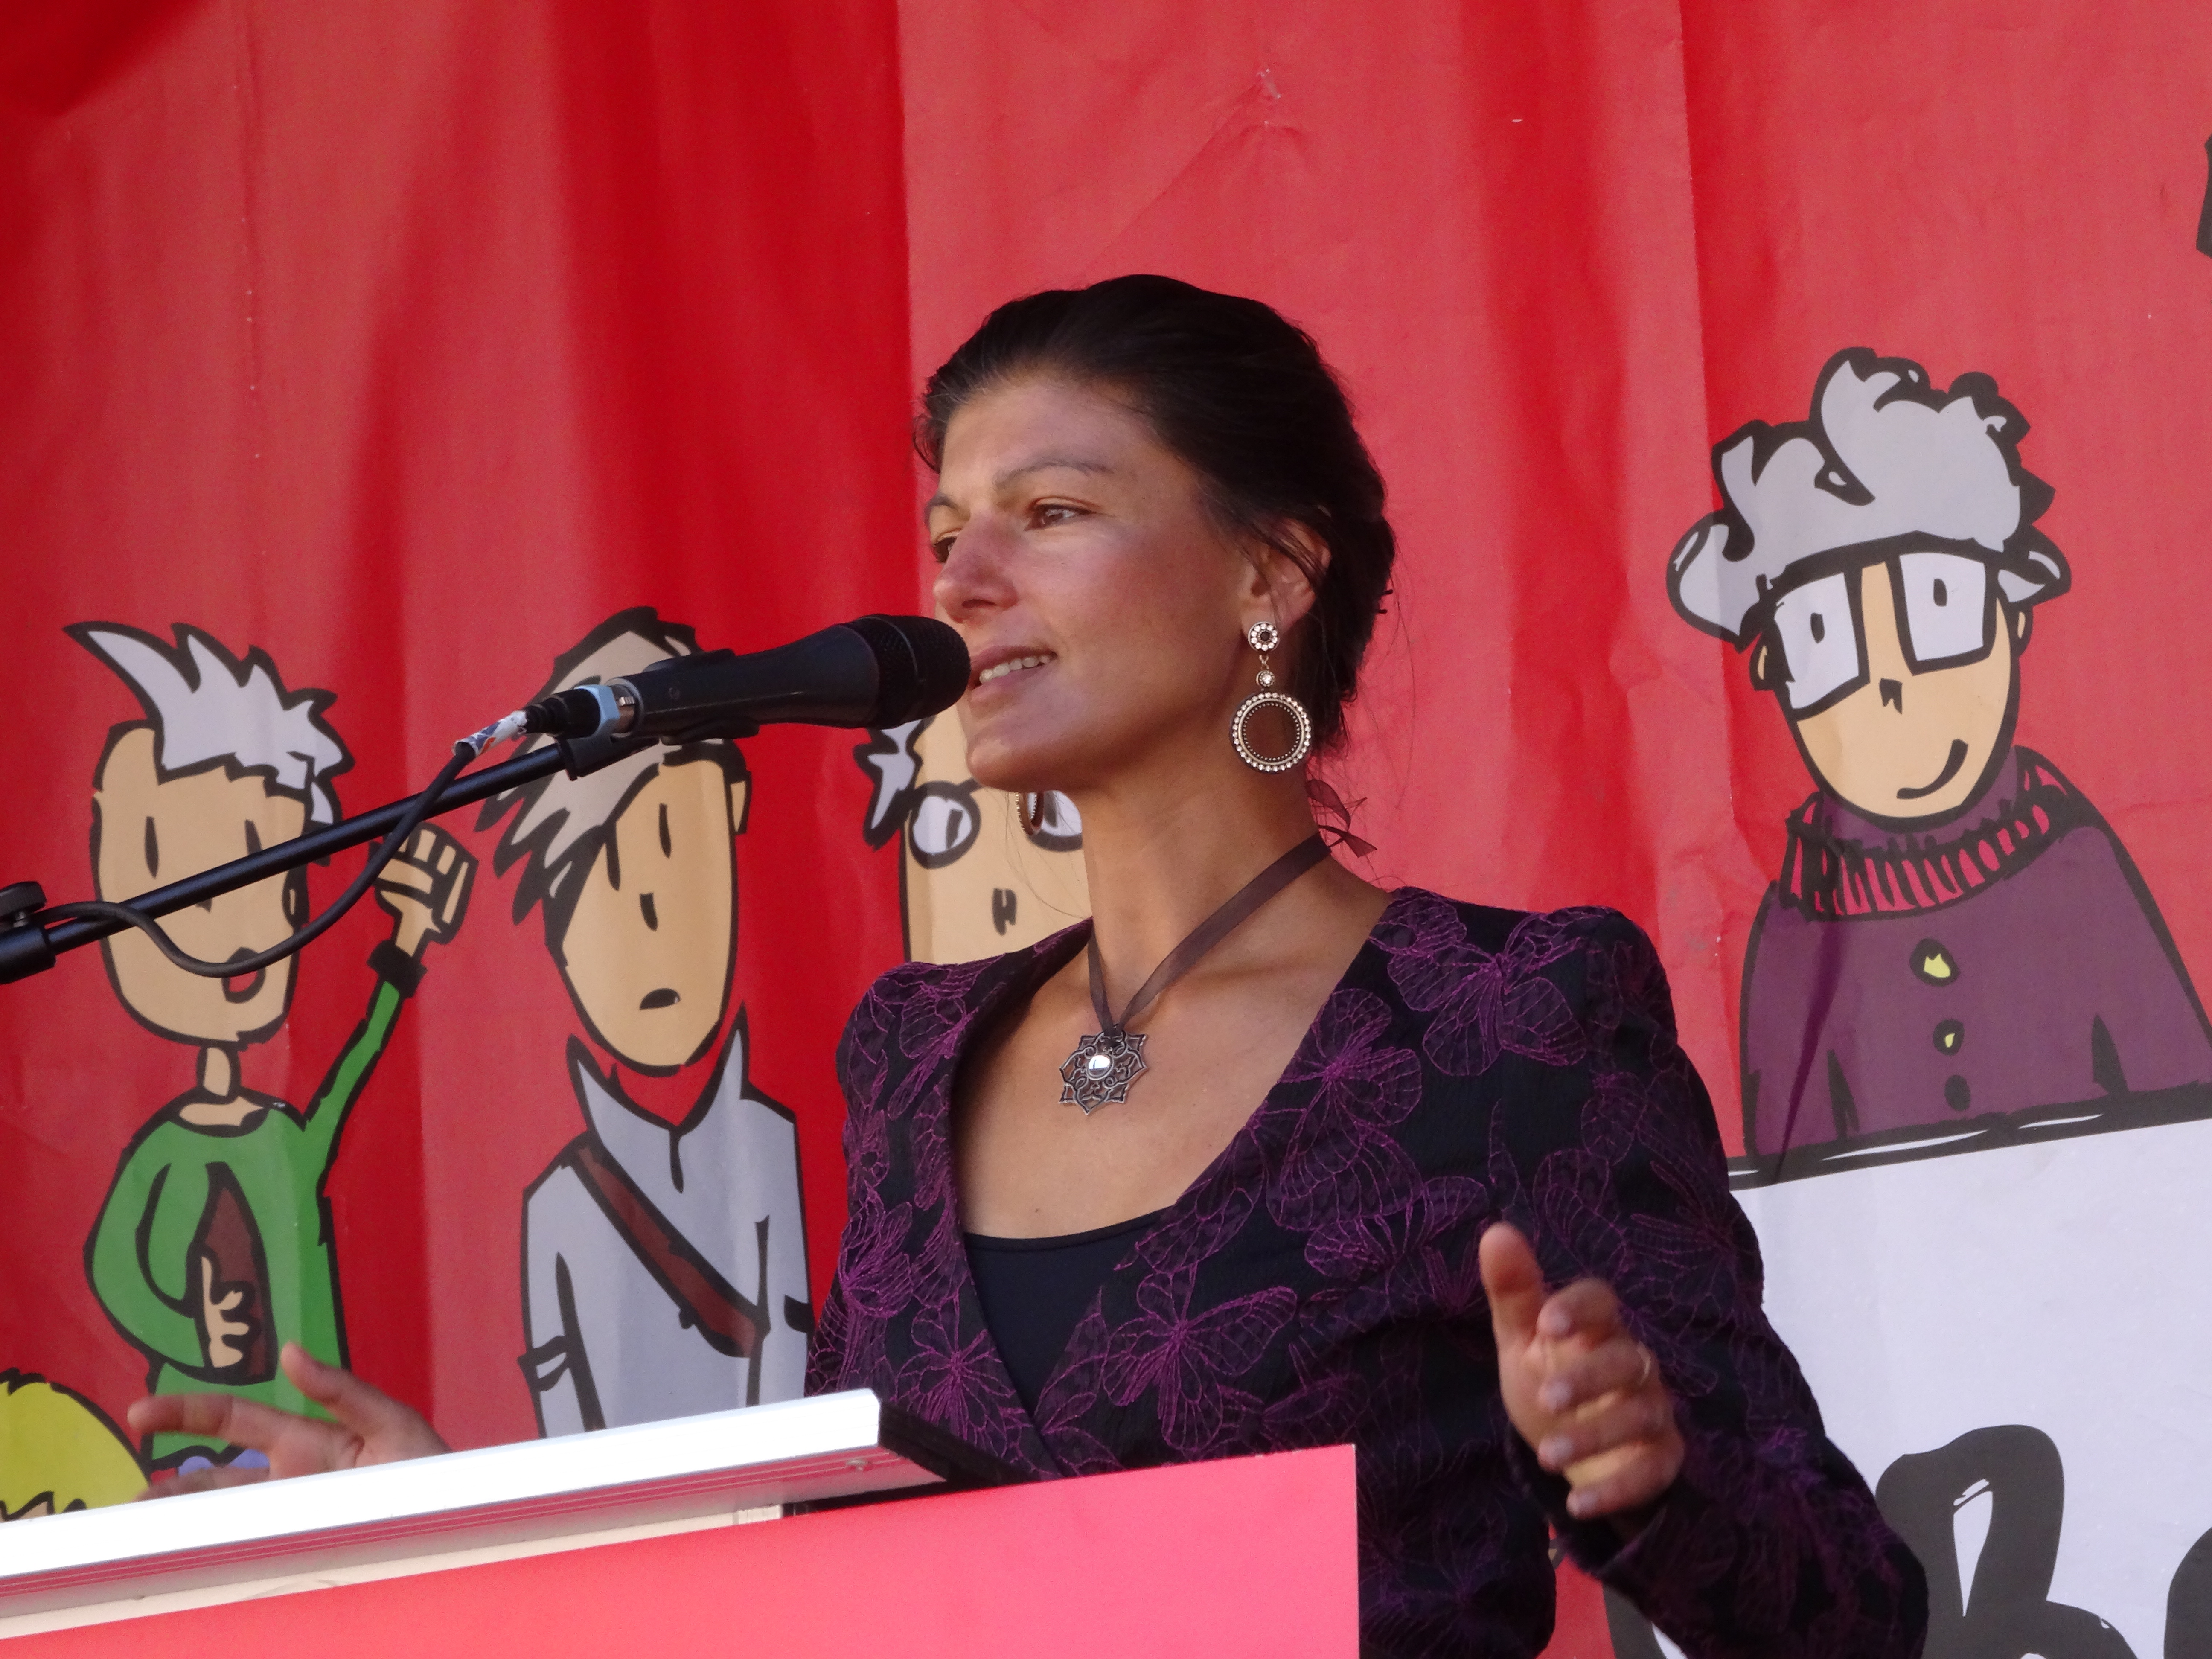 Sahra Wagenknecht in Leipzig, Aug 2014. Foto Detlef M. Plaisier